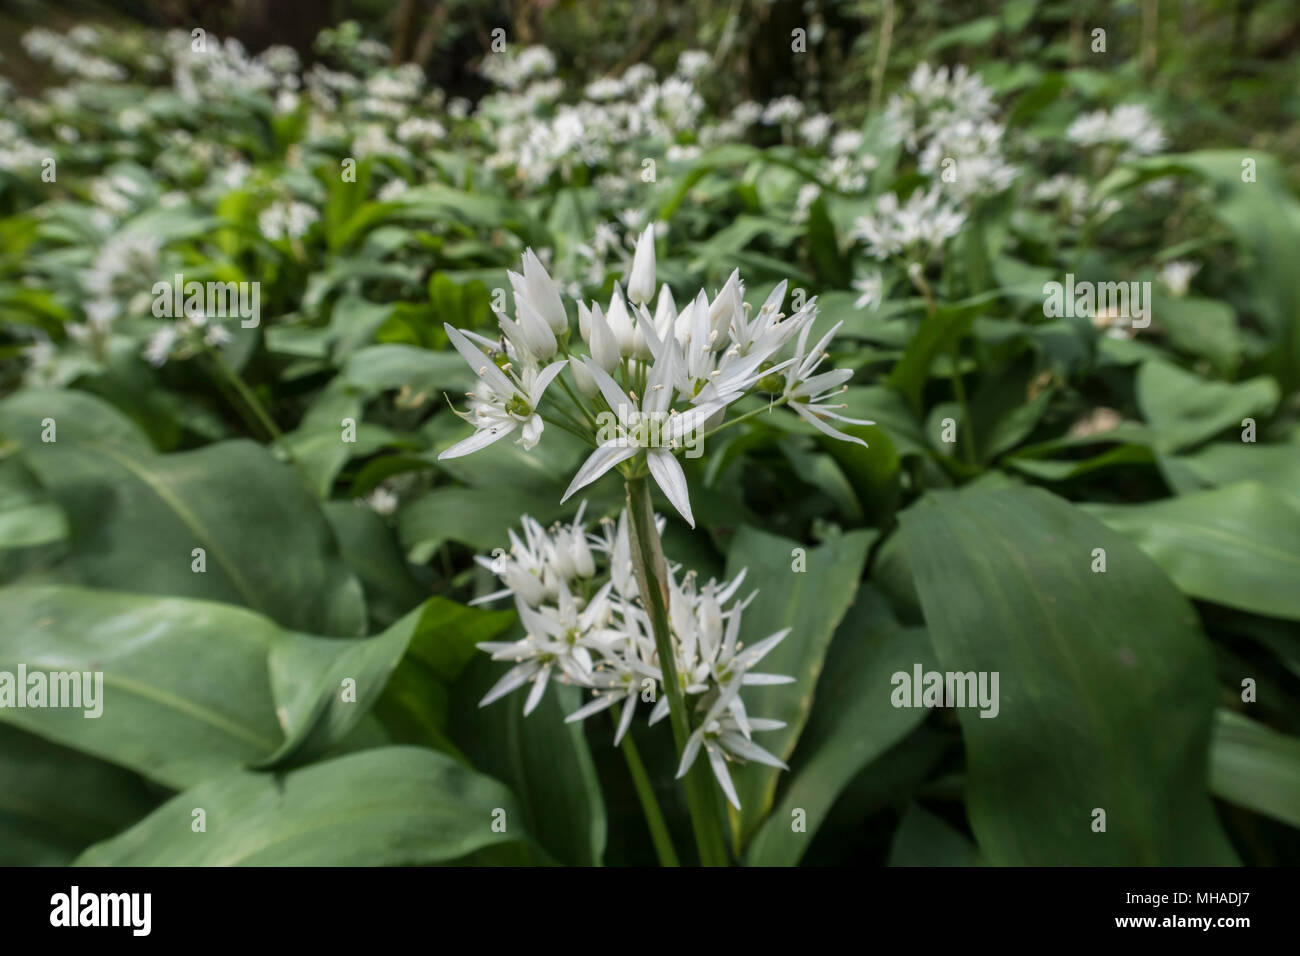 Bärlauch in der Blume in einem englischen Holz. Allium ursinum - Bärlauch, buckrams, Breitblättrigen Knoblauch, Bärlauch, Bärlauch, Porree, Stockfoto